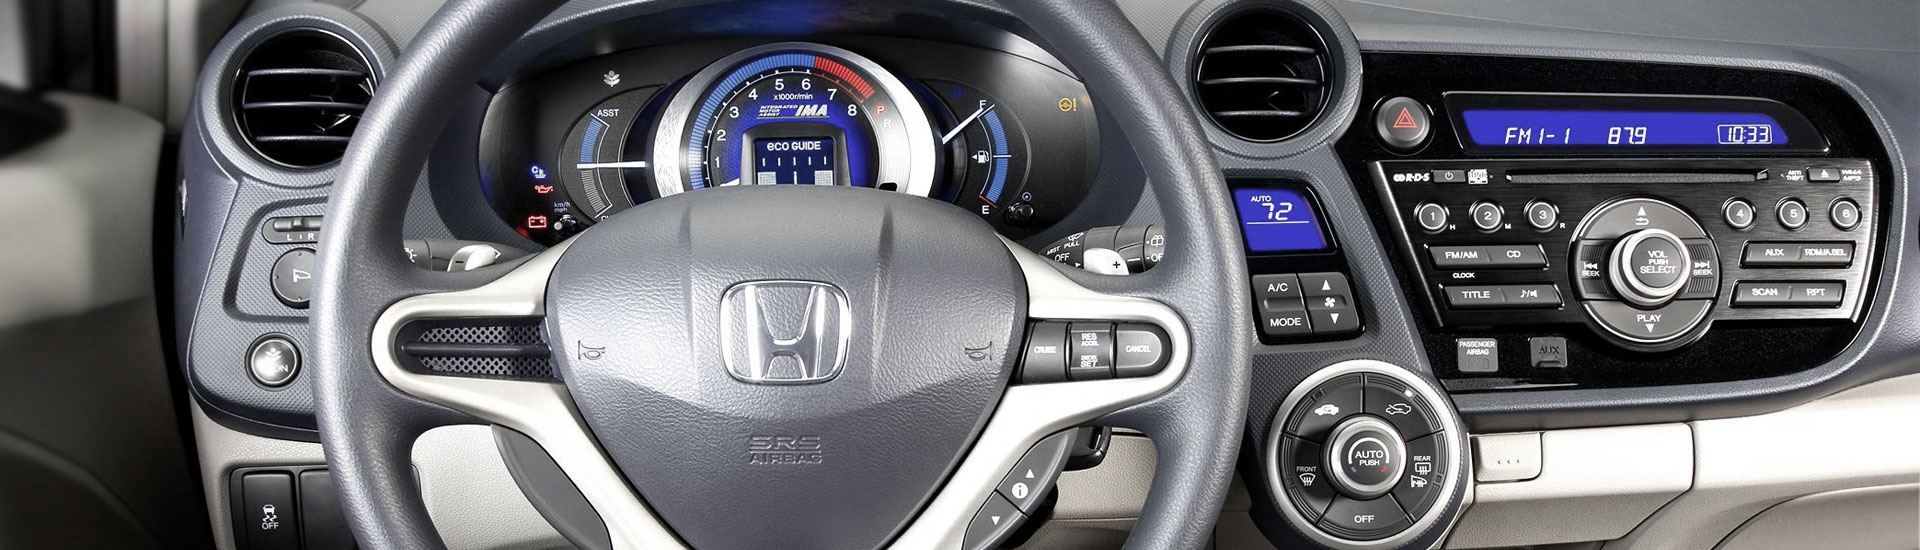 Honda Insight Custom Dash Kits